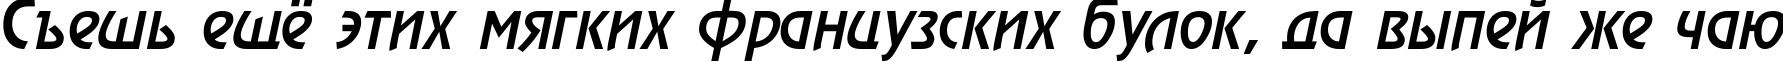 Пример написания шрифтом a_RewinderMedium Italic текста на русском